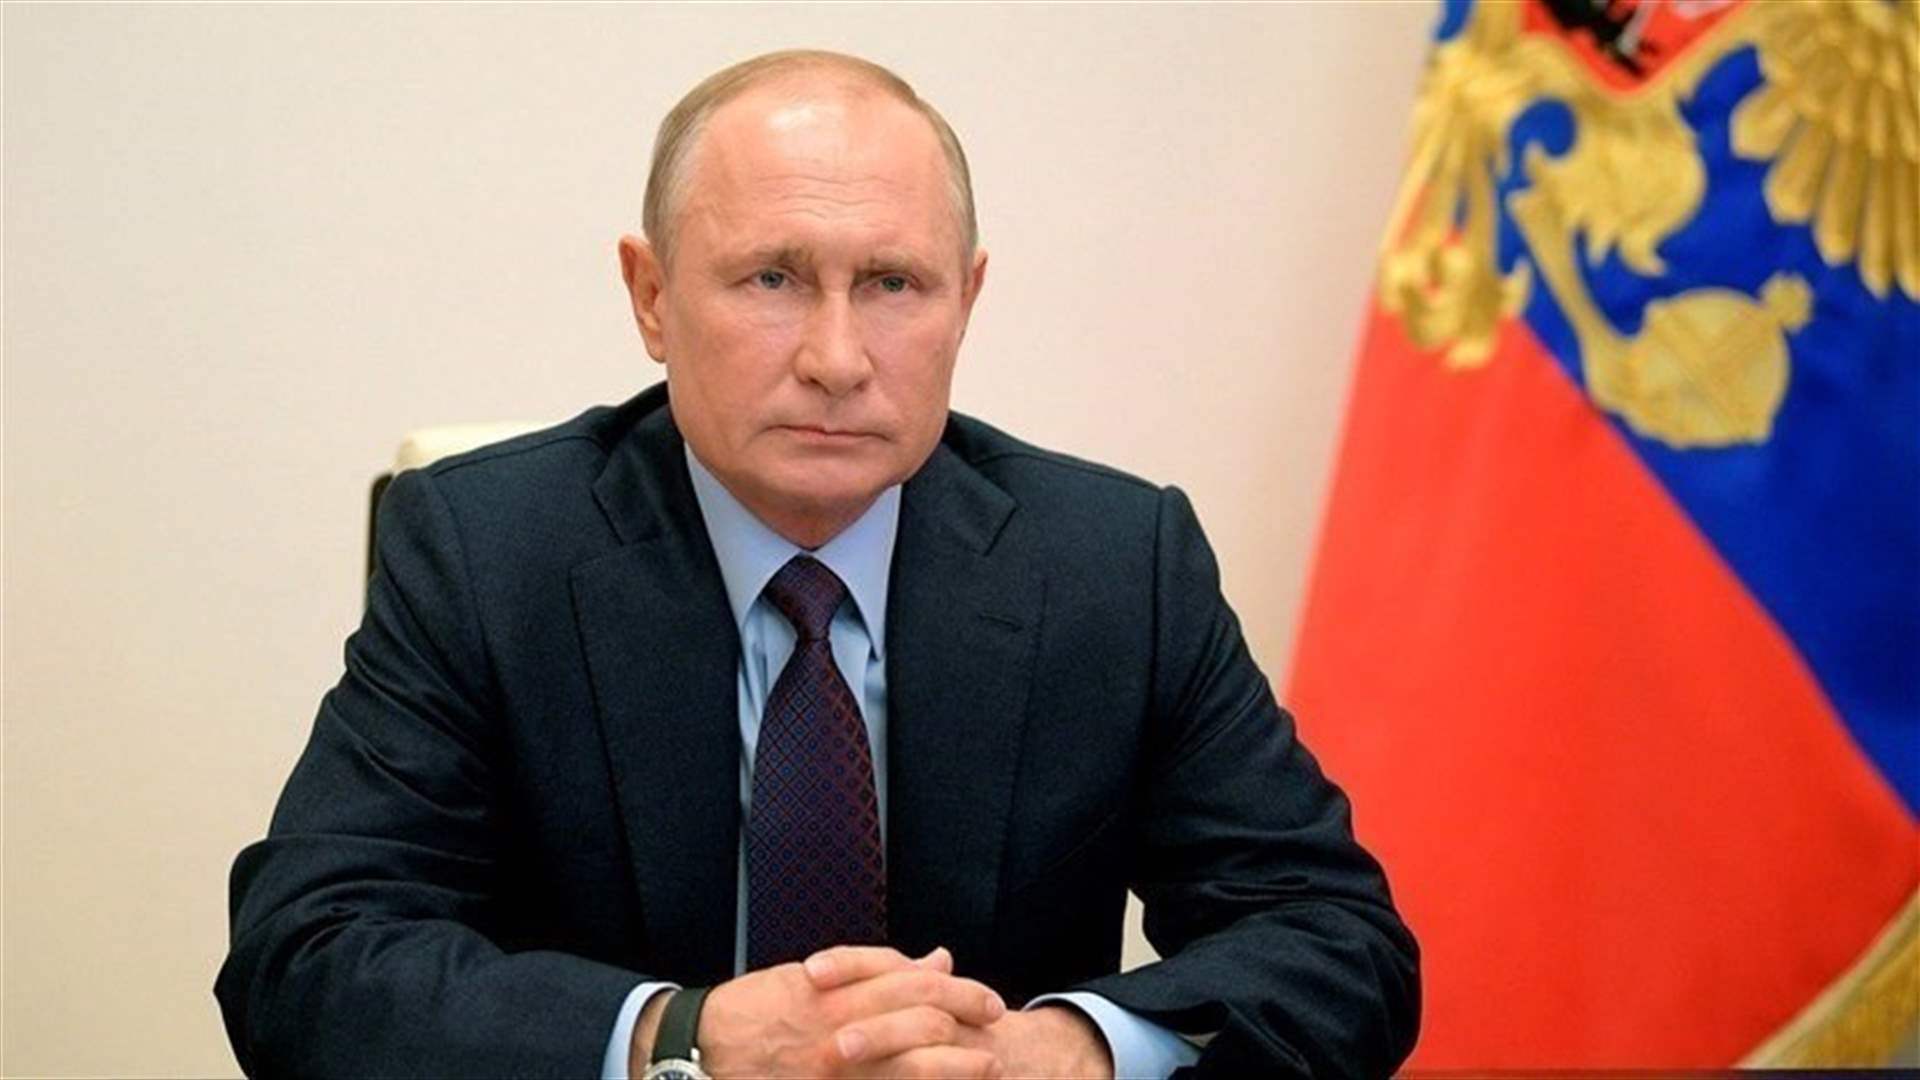 بوتين يتهم الدول الغربية بـ"عرقلة تطوير" شركة غازبروم